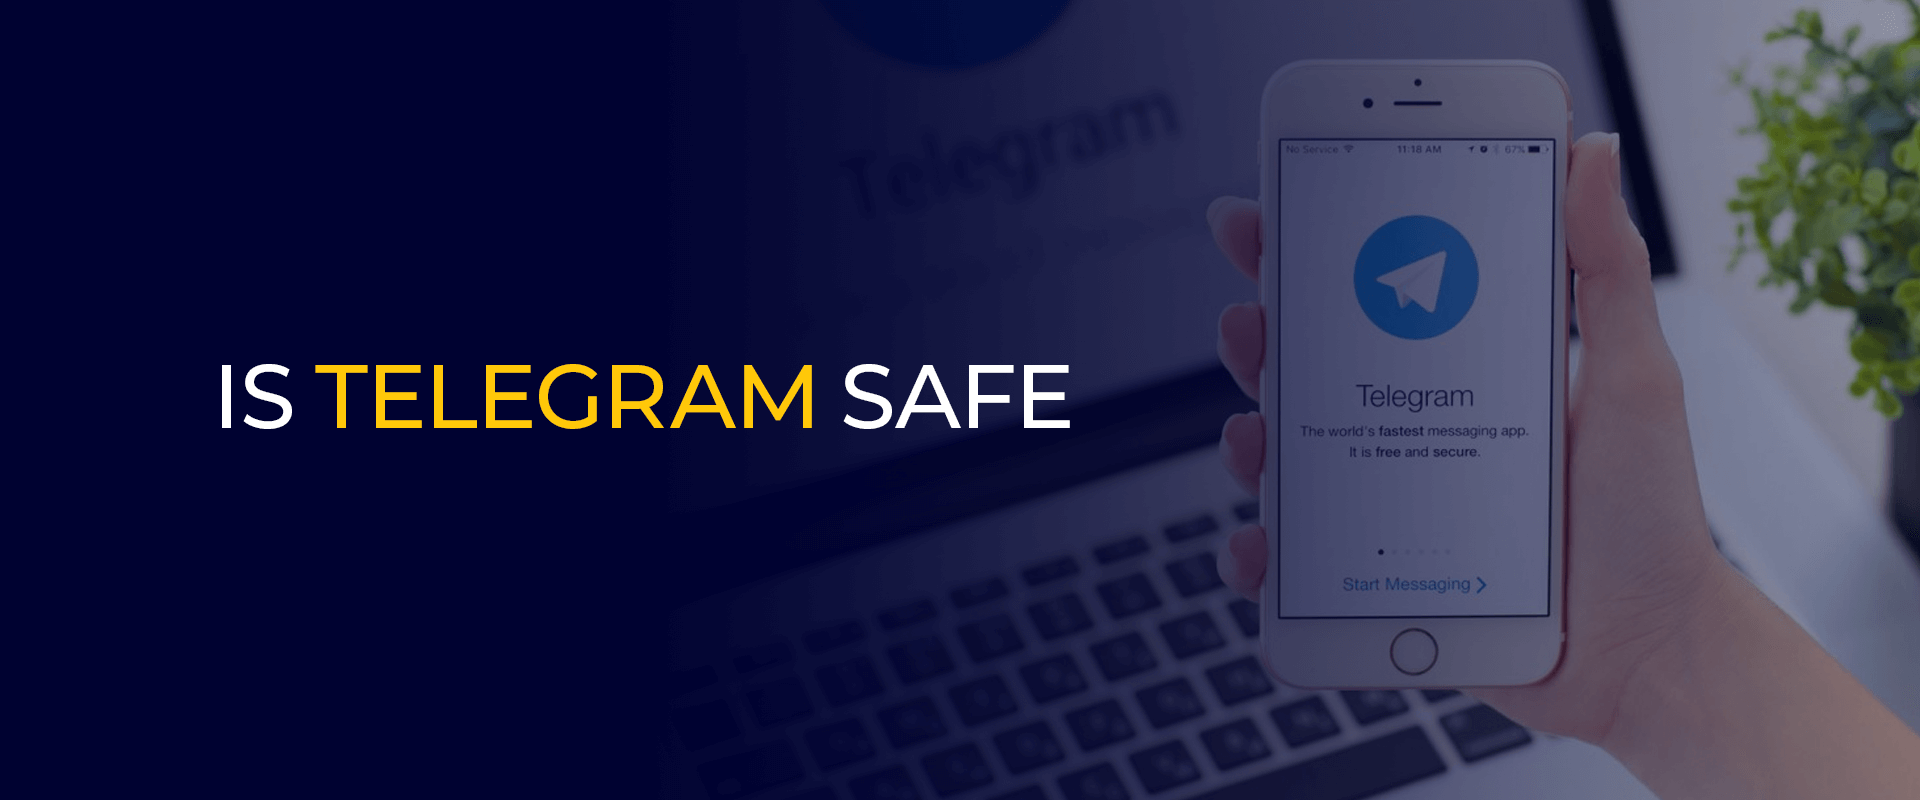 Ist Telegram sicher?